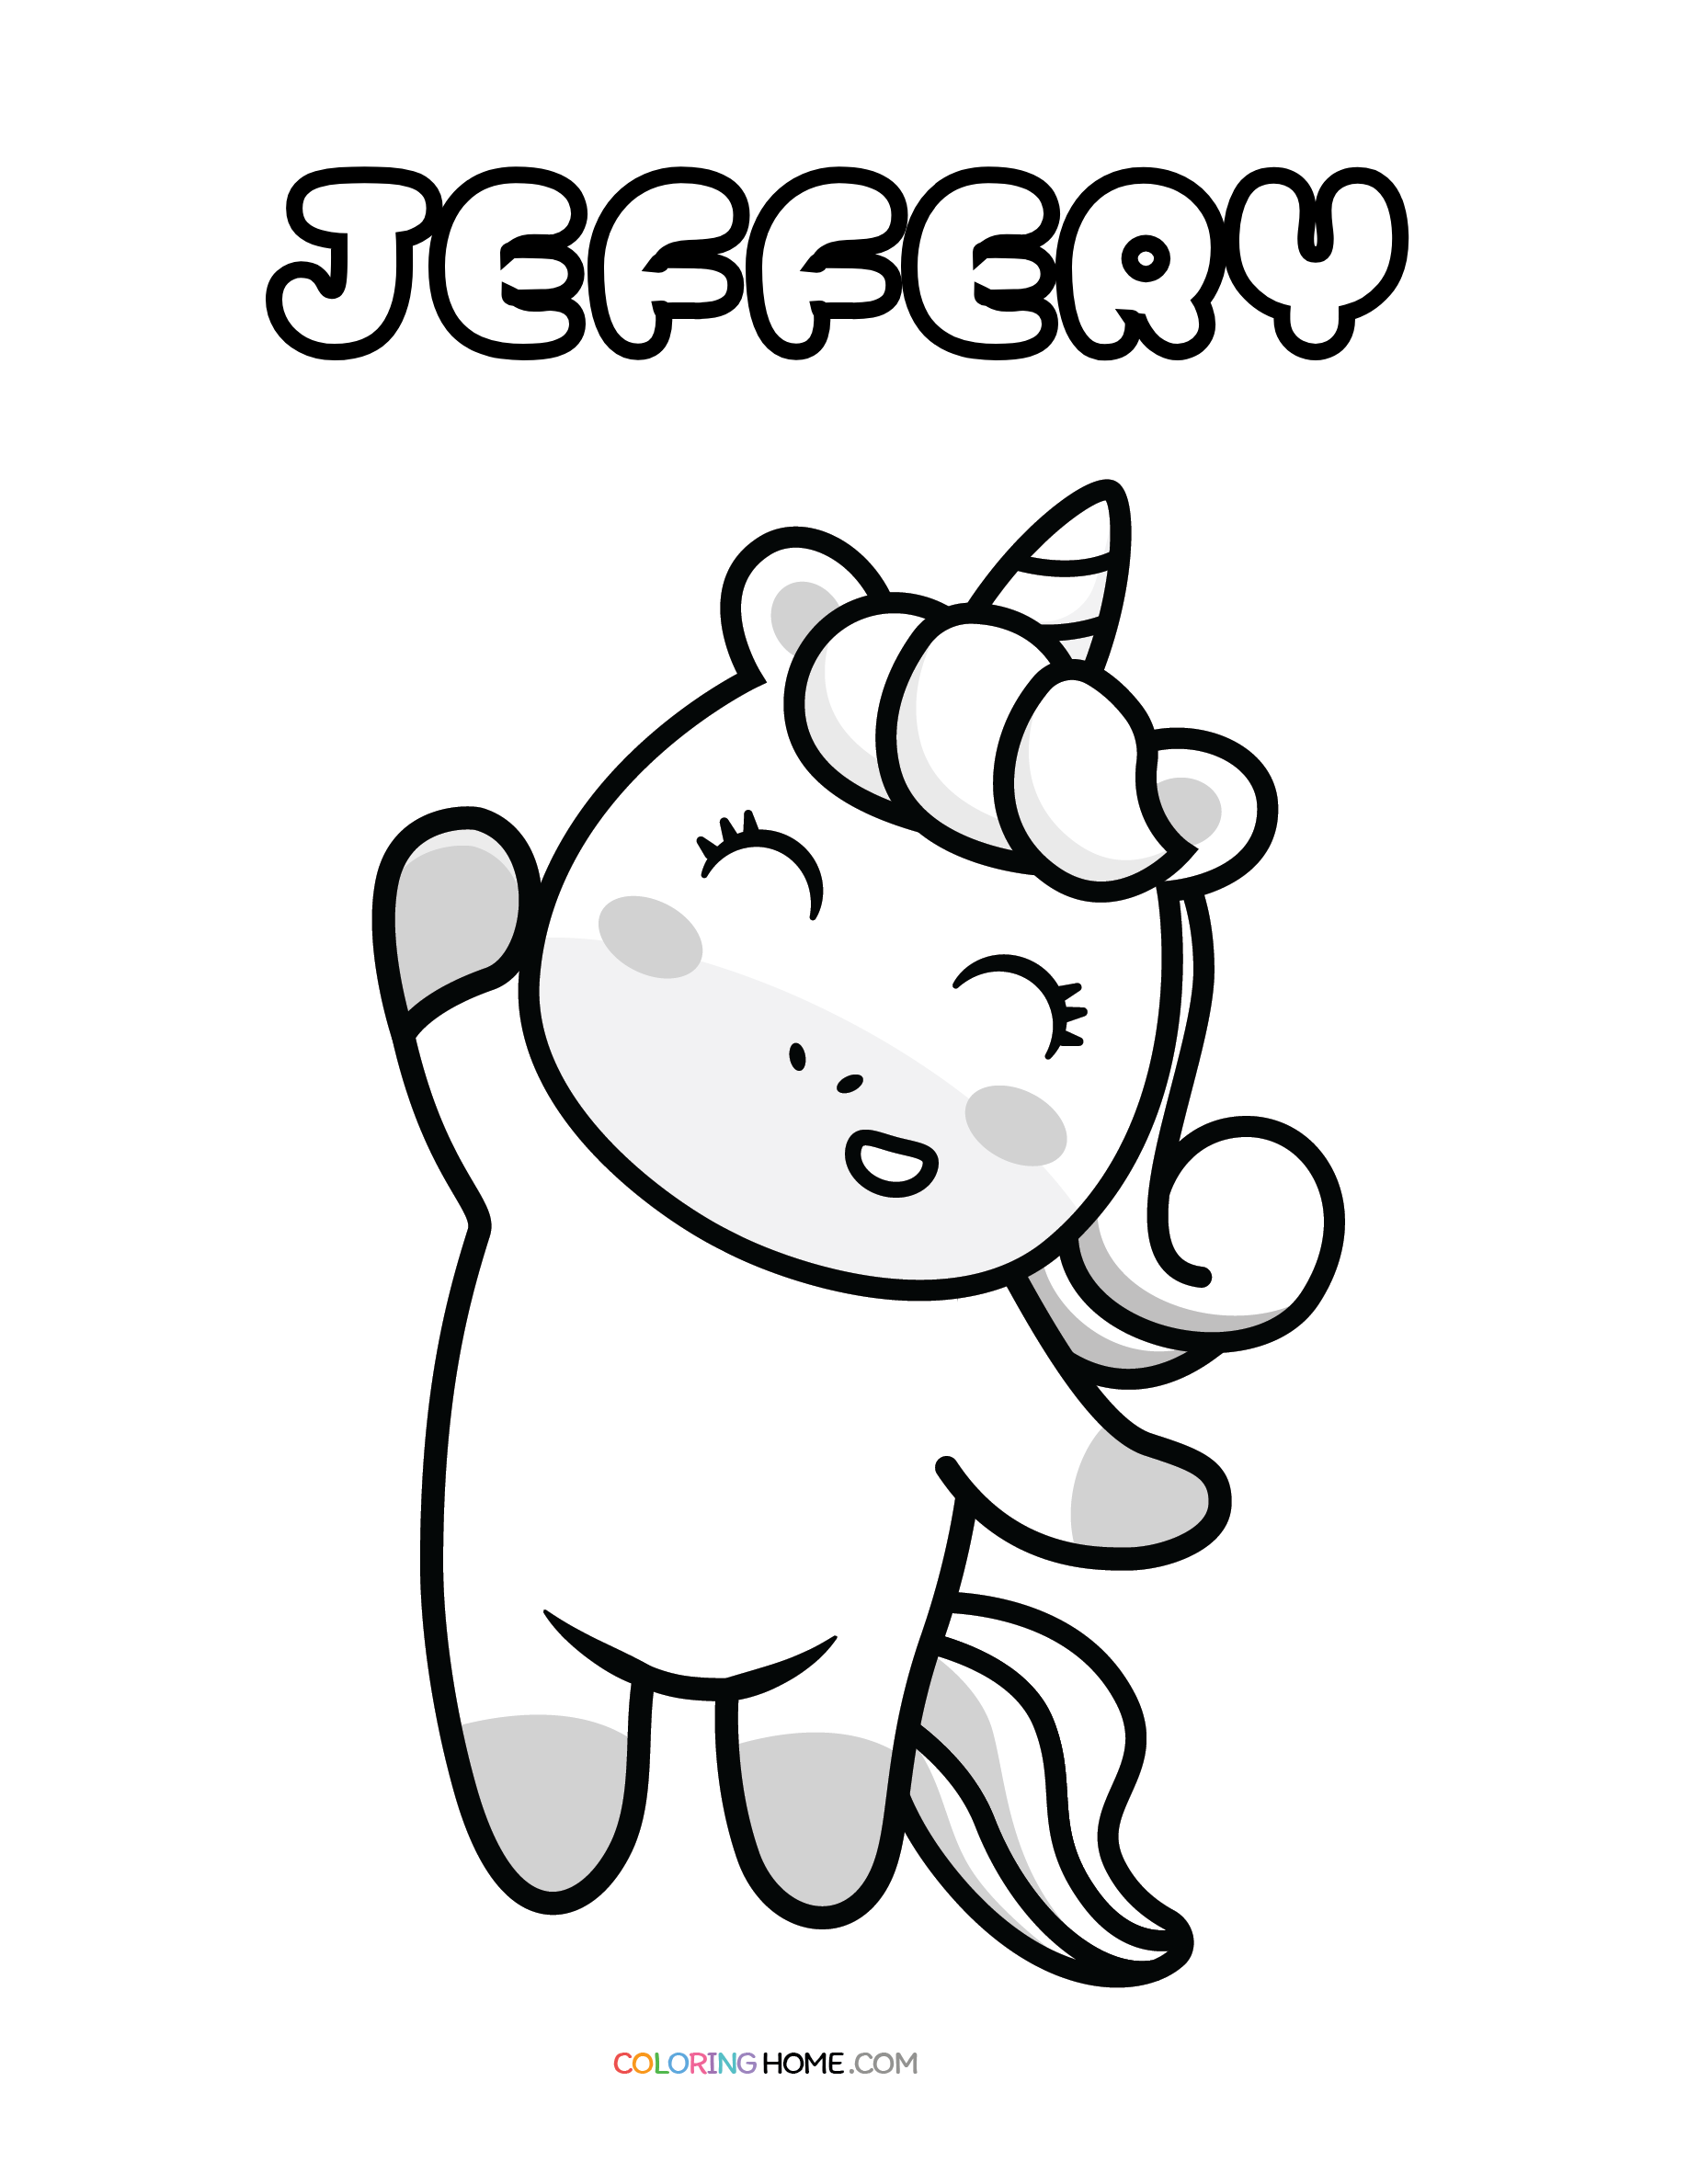 Jeffery unicorn coloring page